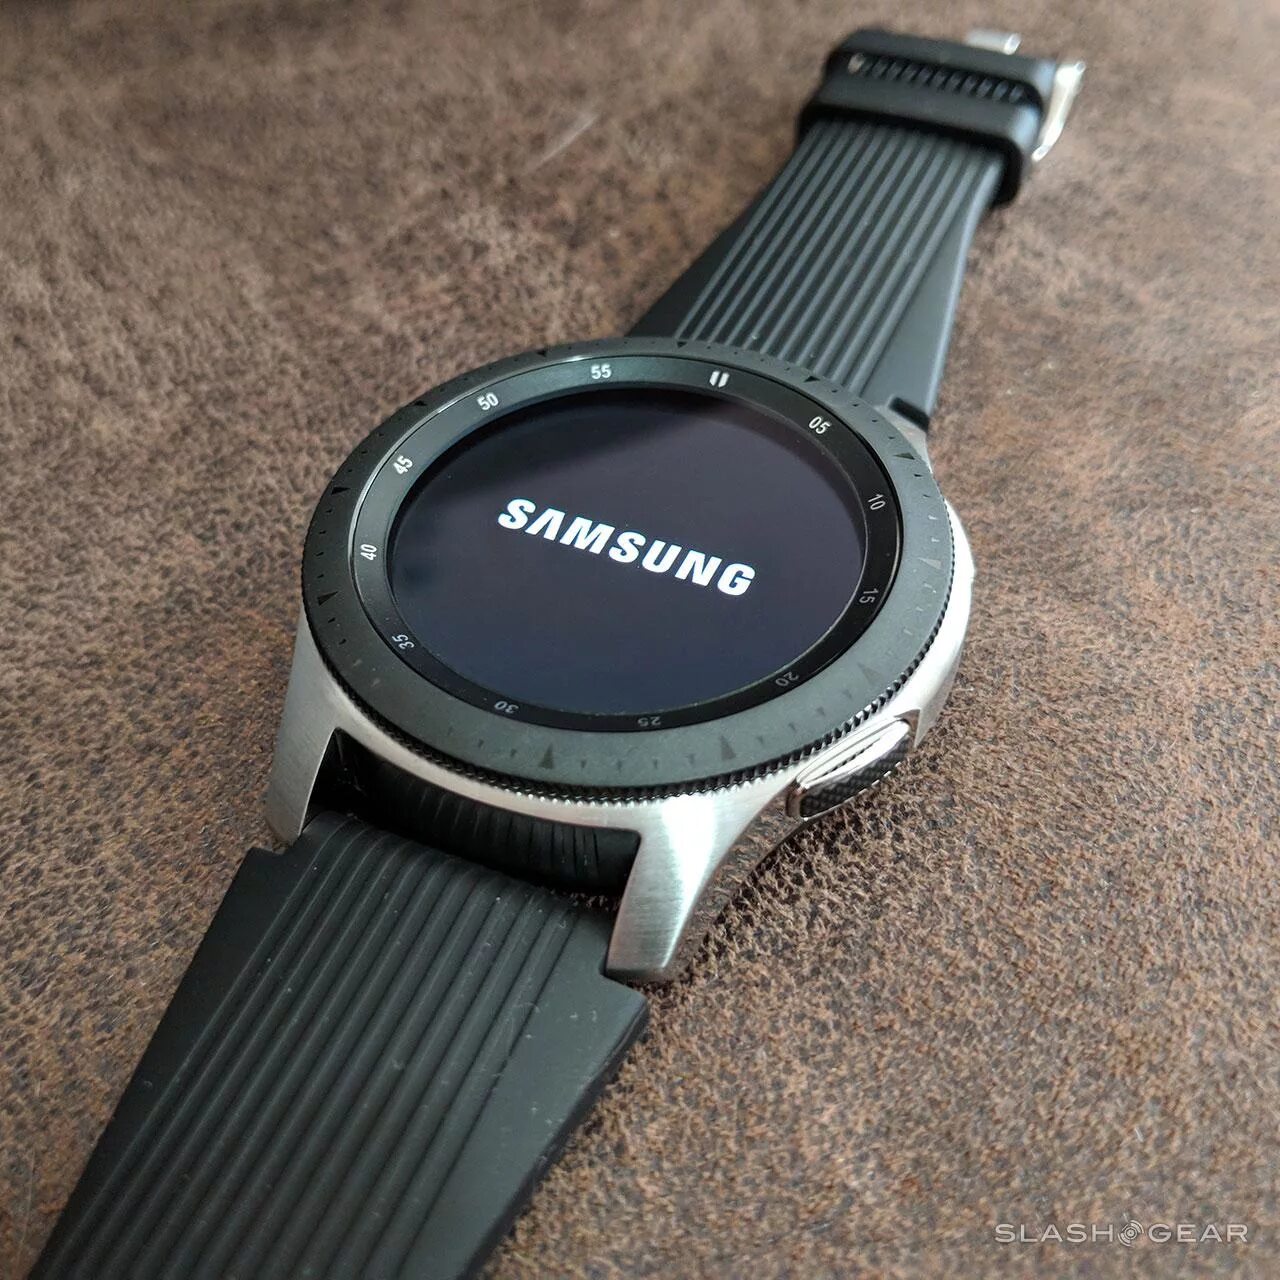 Samsung Galaxy watch r800. Samsung Galaxy watch SM-r800. Samsung Galaxy watch 46mm SM-r800 Silver. Samsung Galaxy watch 46mm Silver r800. Samsung watch 1